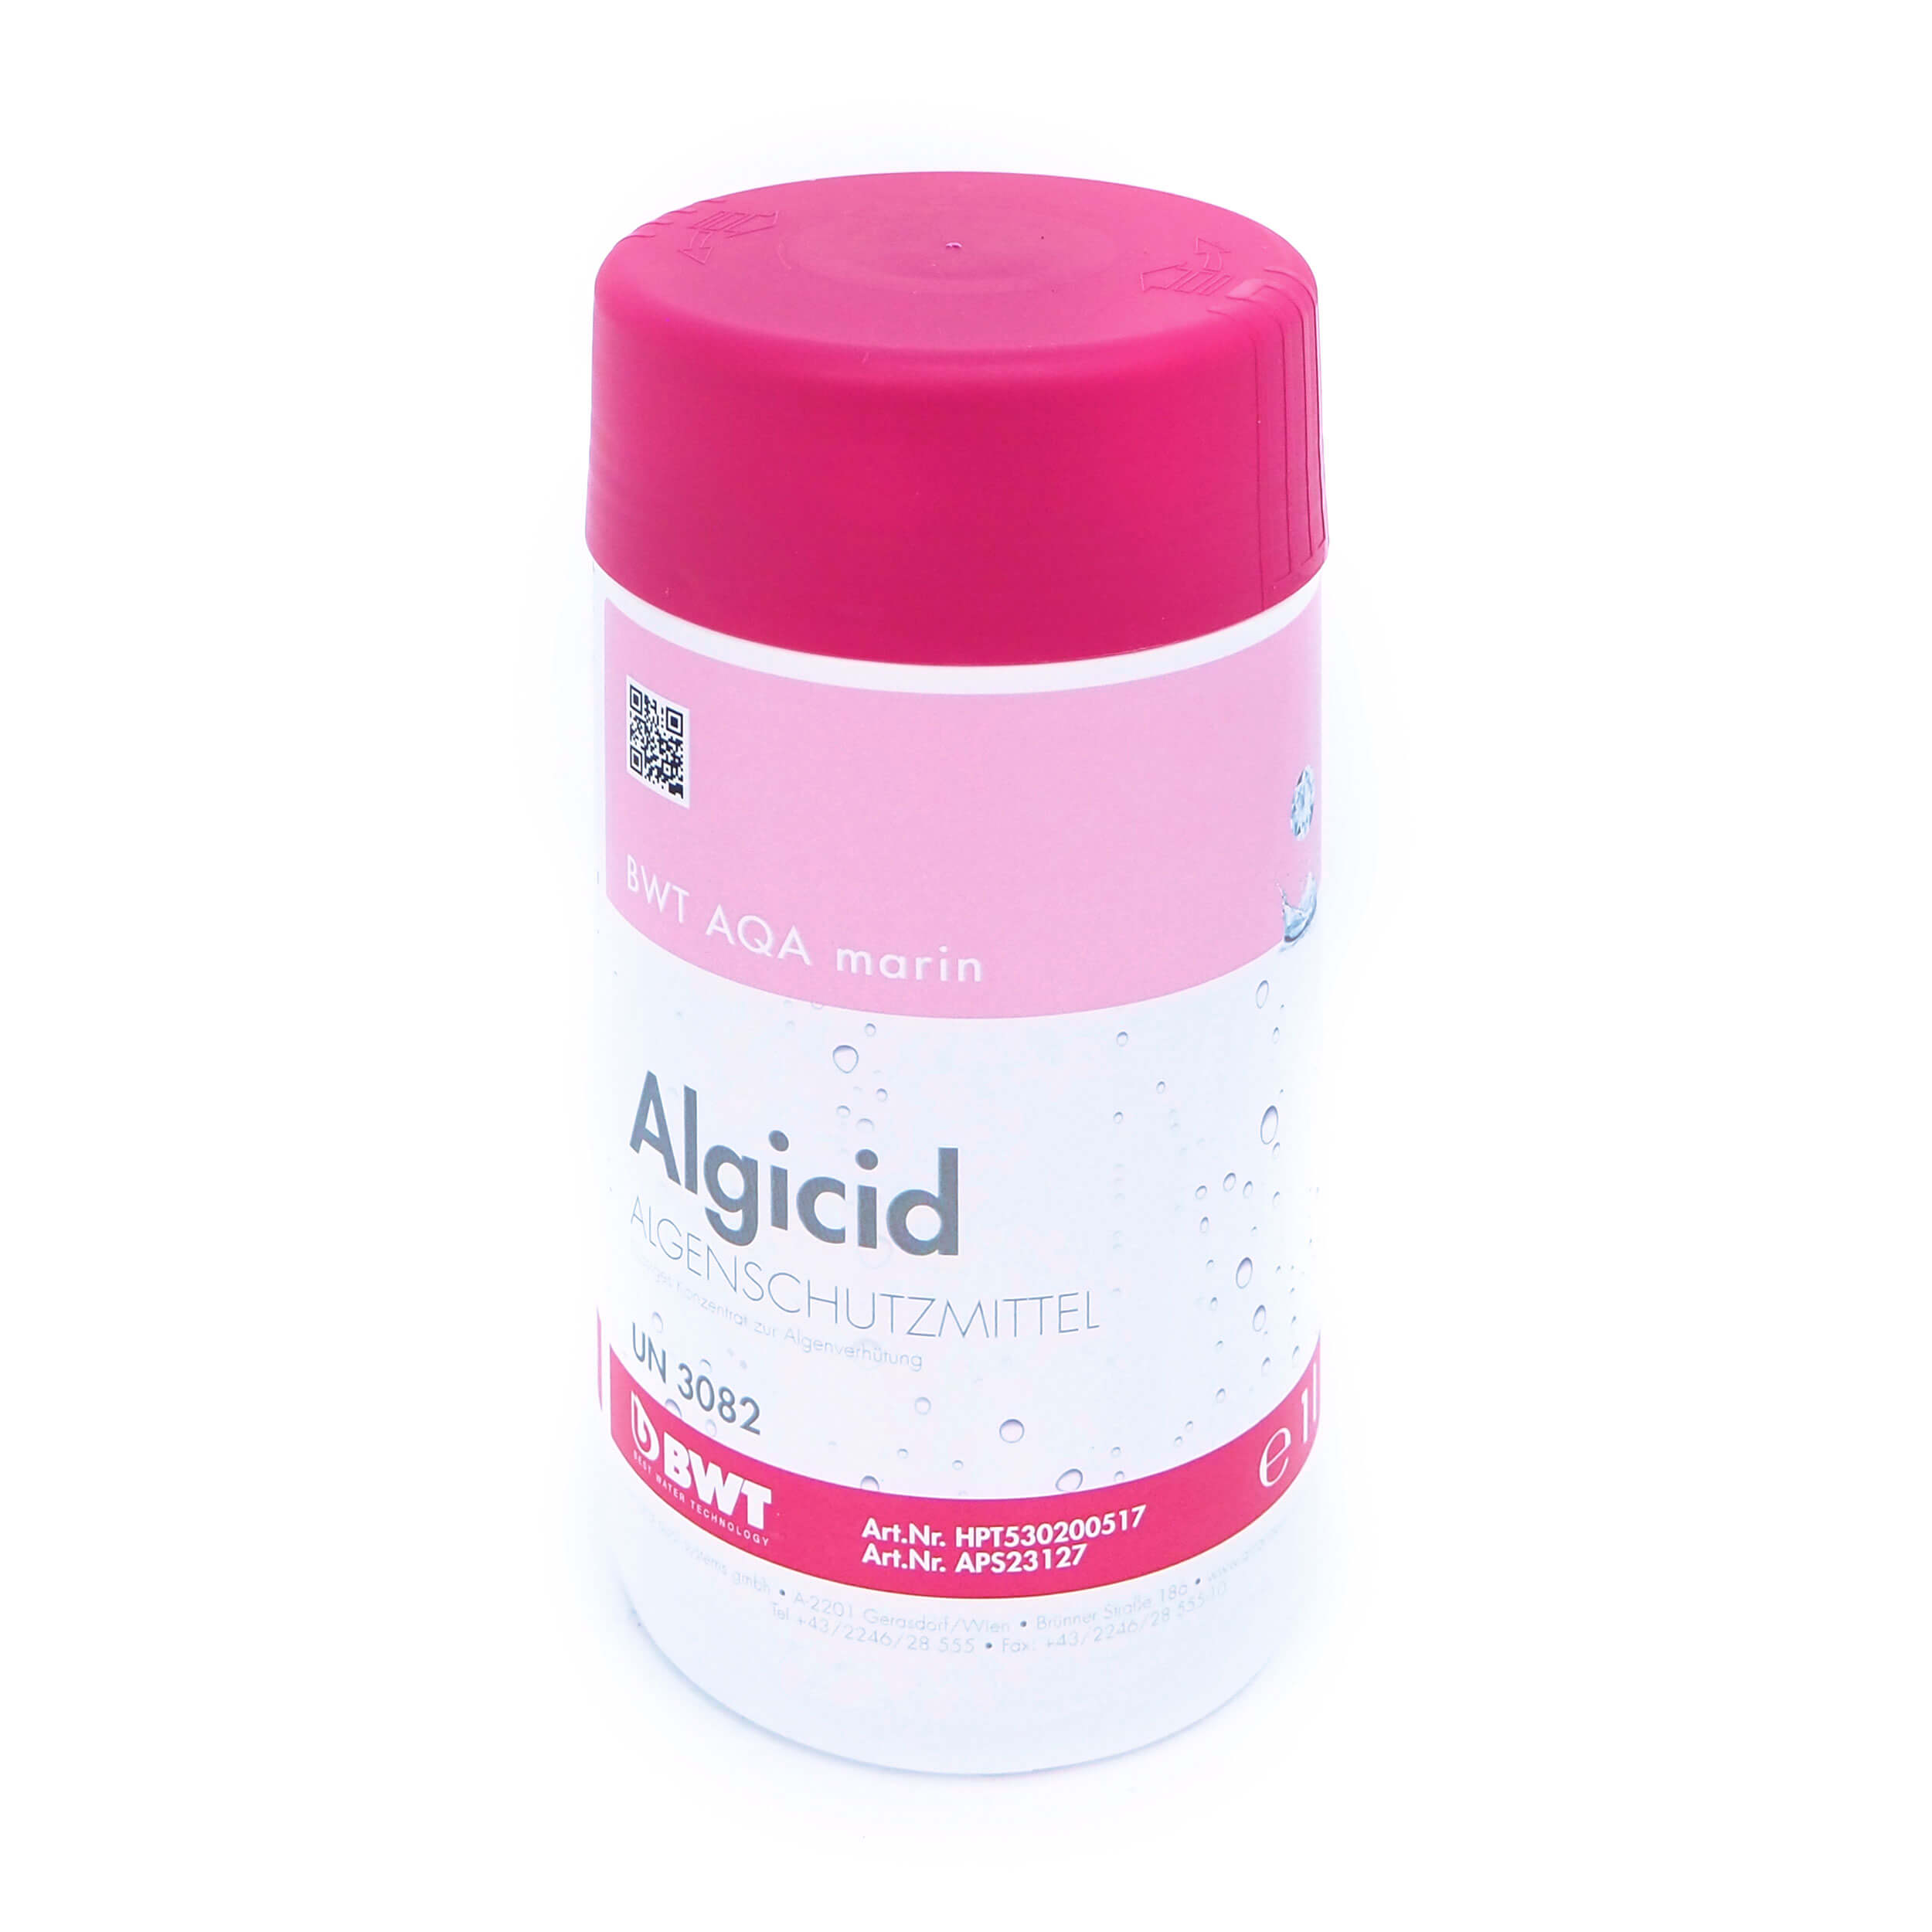 AQA marin Algicid 18% schaumfrei 1 Liter